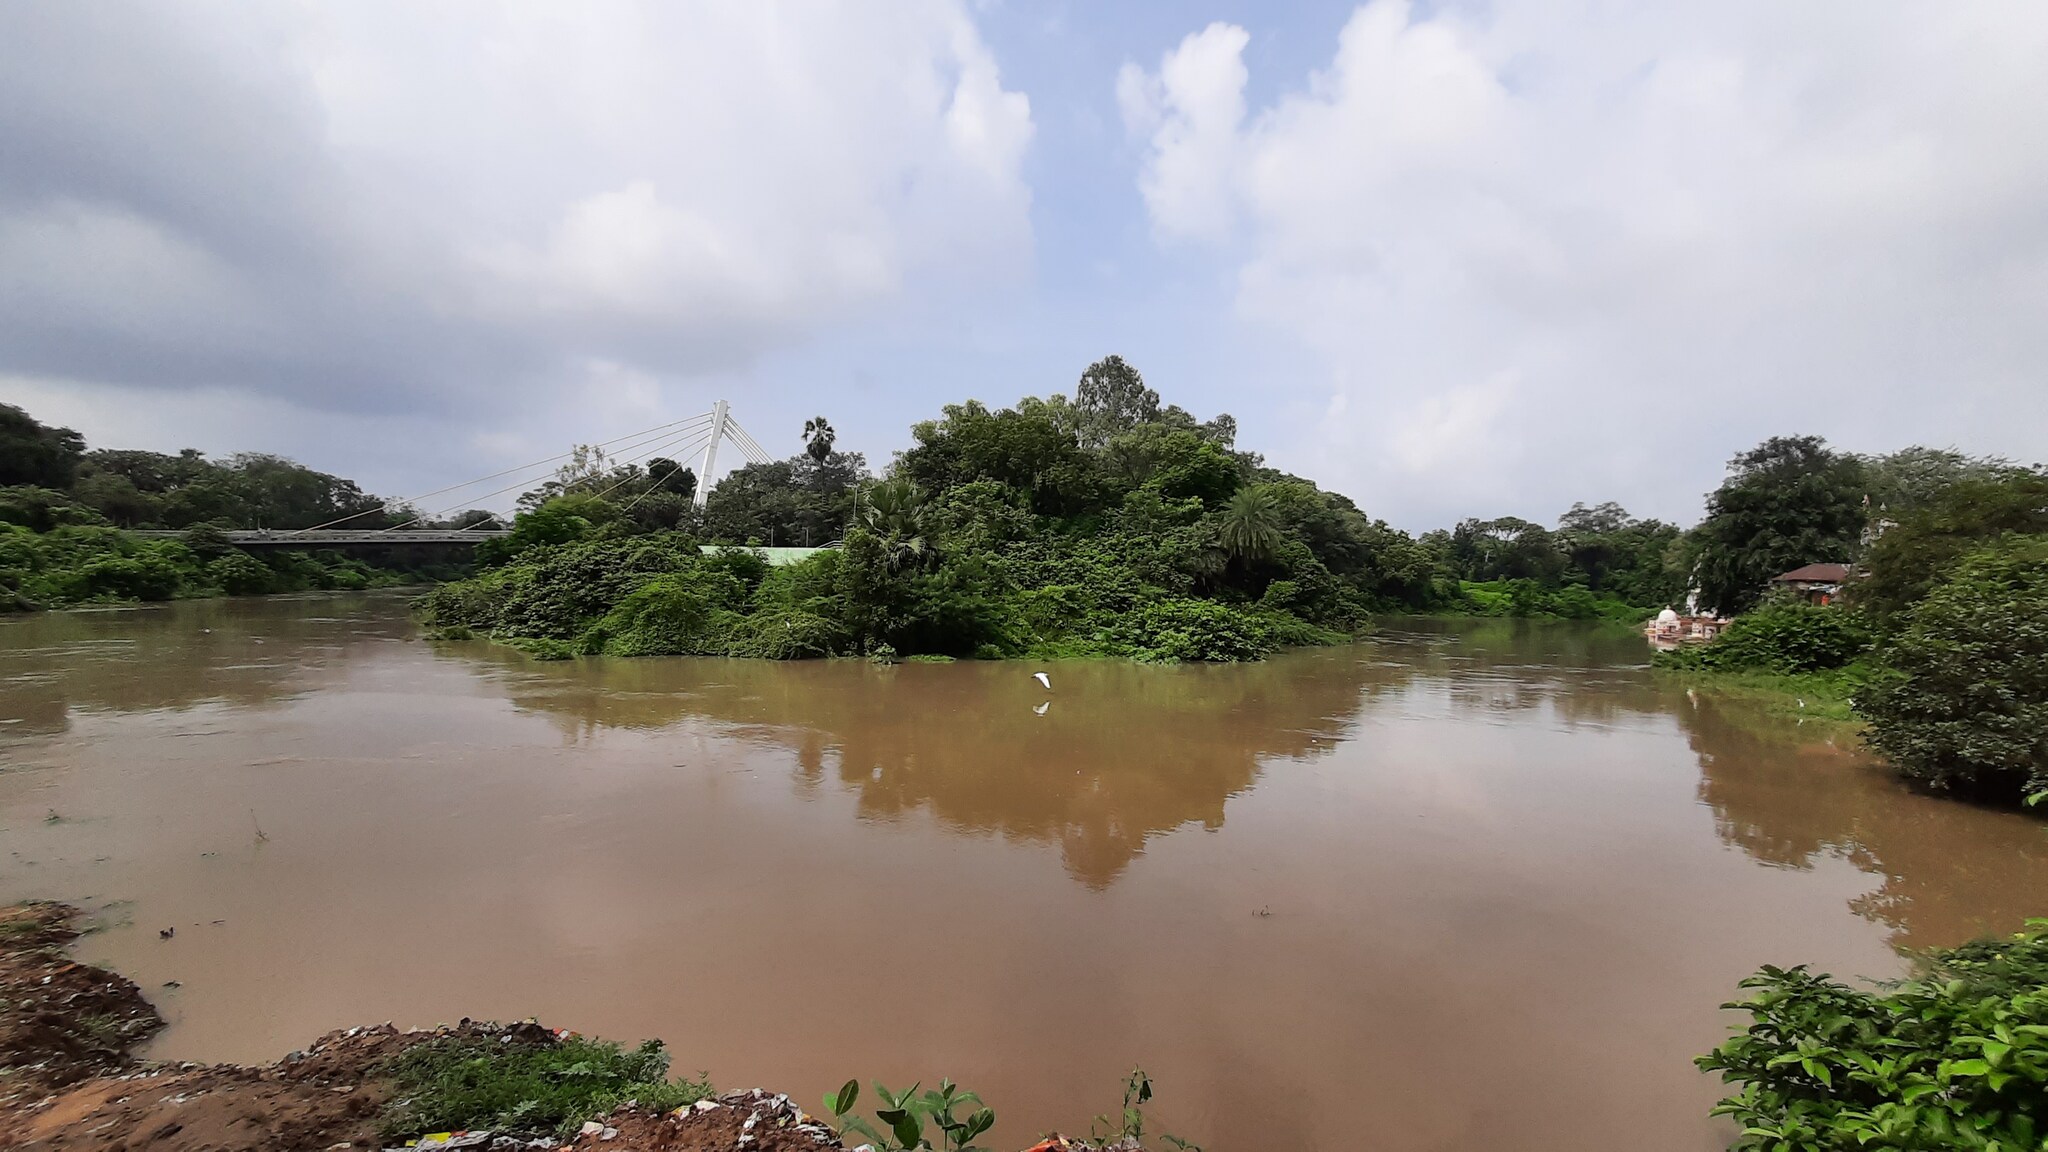 વડોદરા: વિશ્વામિત્રી નદીની જળ સપાટીમાં સતત વધારો, ભયજનક સપાટીથી માત્ર ચાર ફૂટ દૂર